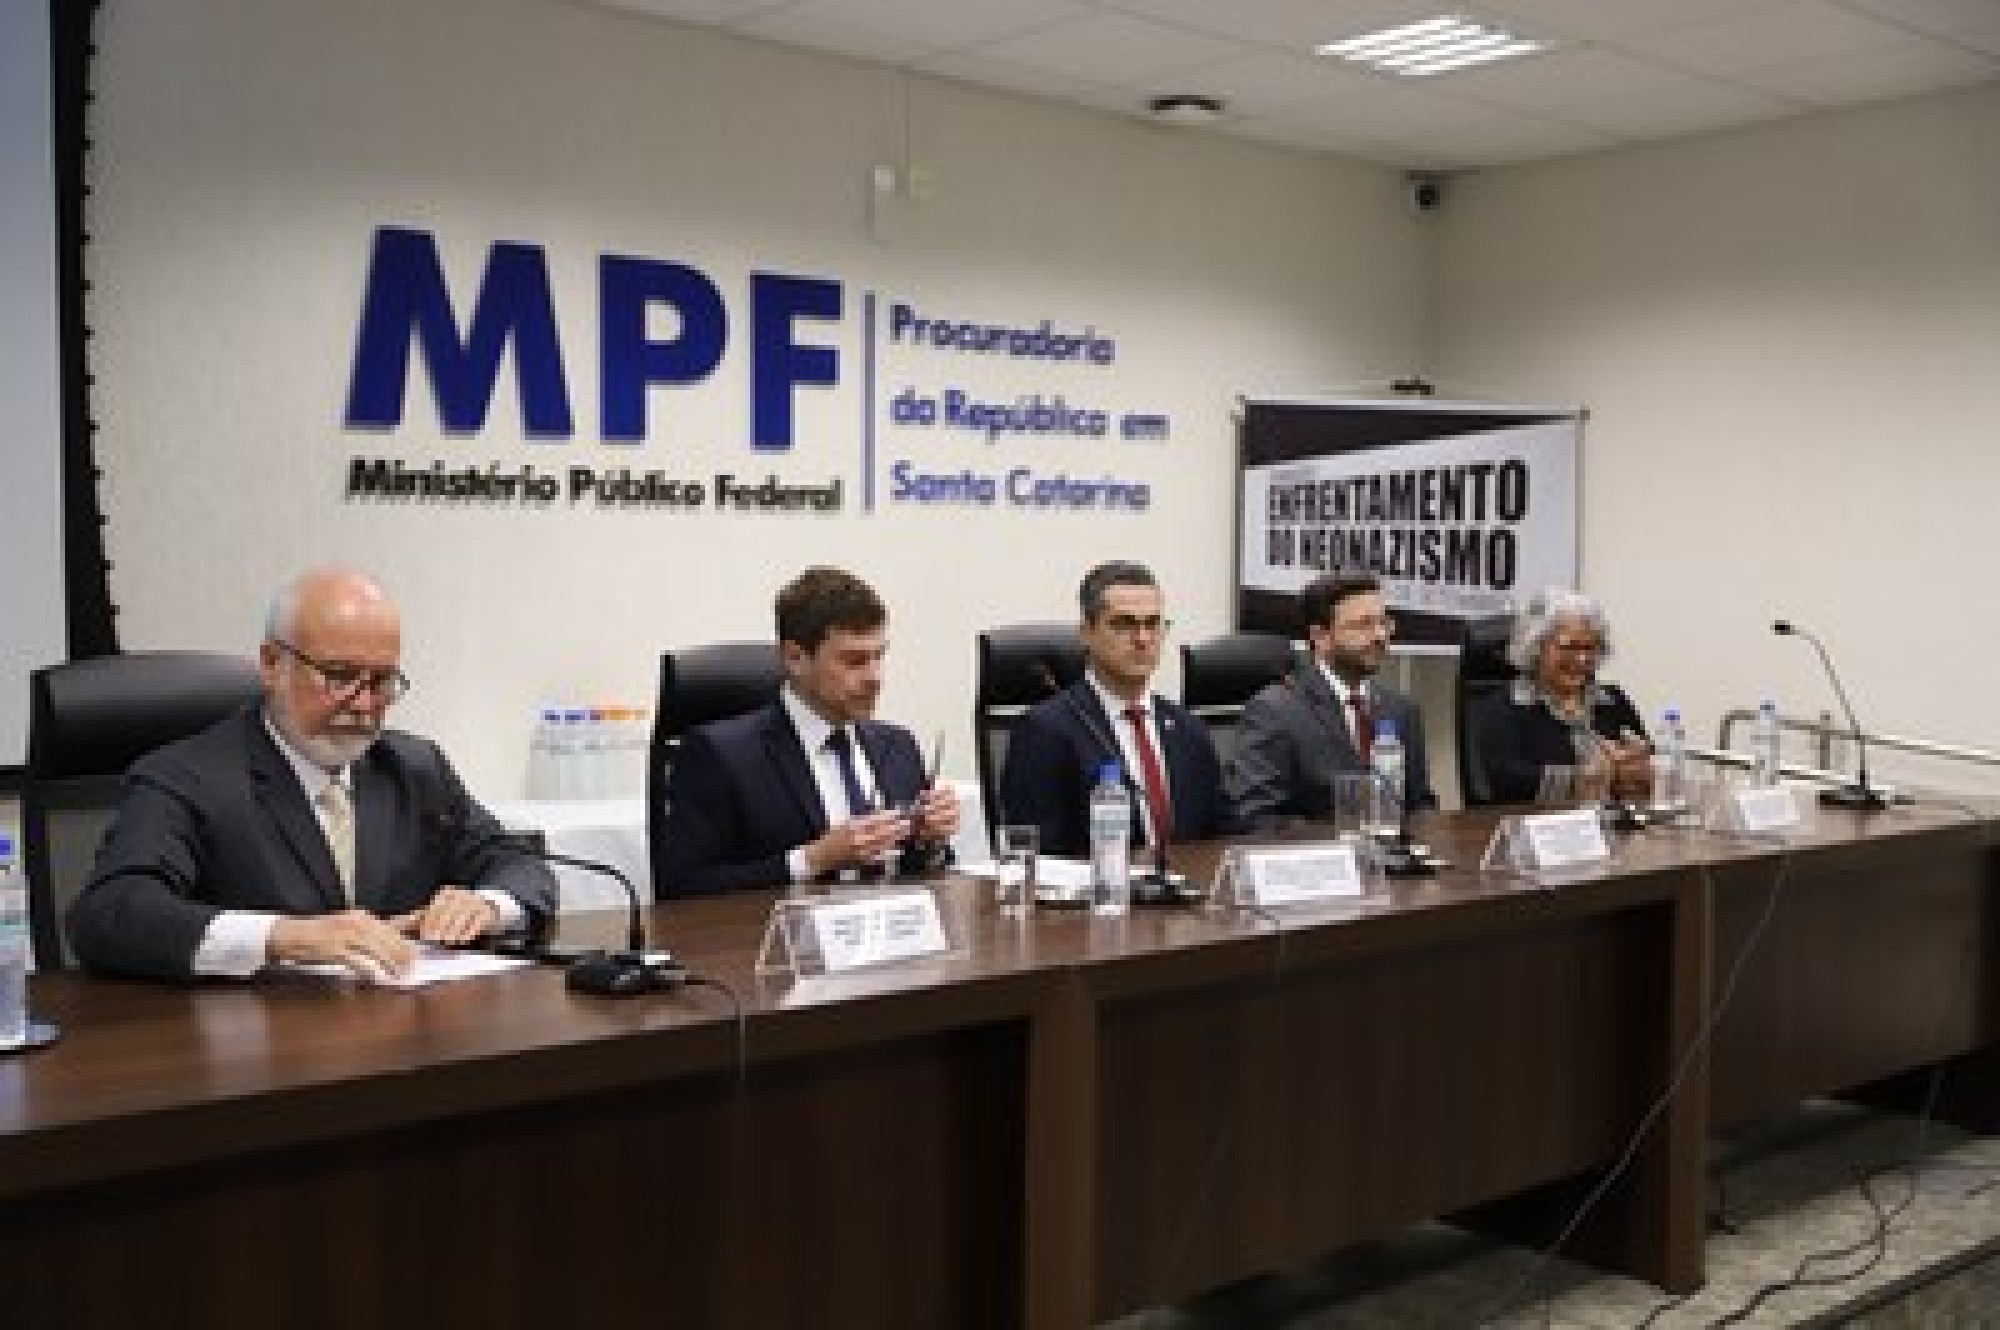 MPF reúne em Santa Catarina autoridades e especialistas para discutir crimes de ódio no Brasil - Fundada em 1948, a CONIB – Confederação Israelita do Brasil é o órgão de representação e coordenação política da comunidade judaica brasileira. 